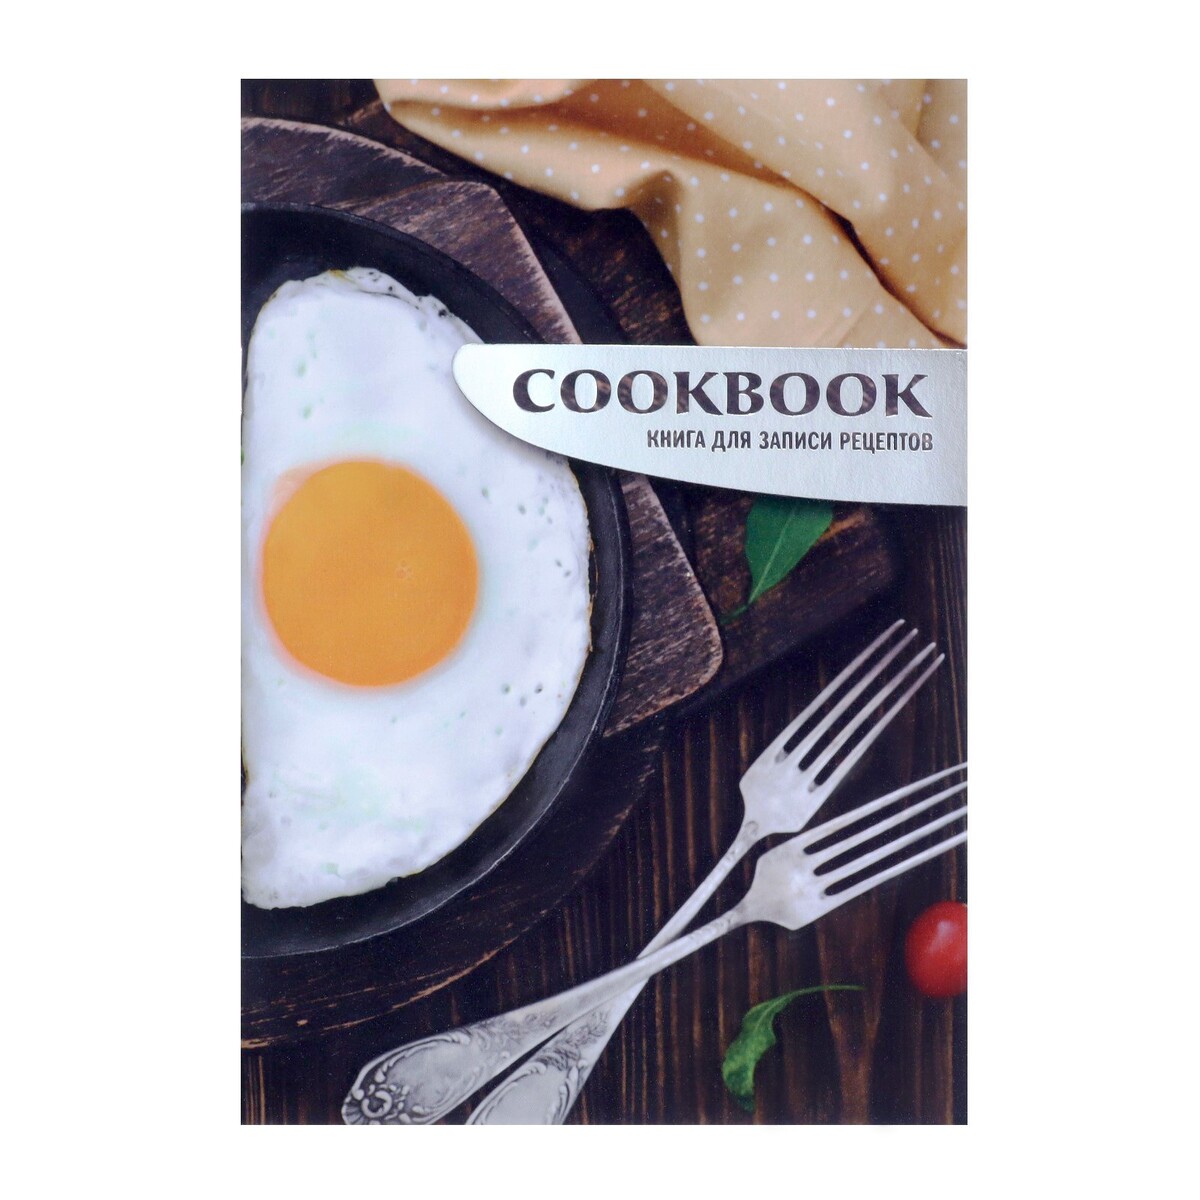 Книга для записи кулинарных рецептов а5, 48 листов книга для записи кулинарных рецептов а5 80 листов мои рецепты твёрдая обложка